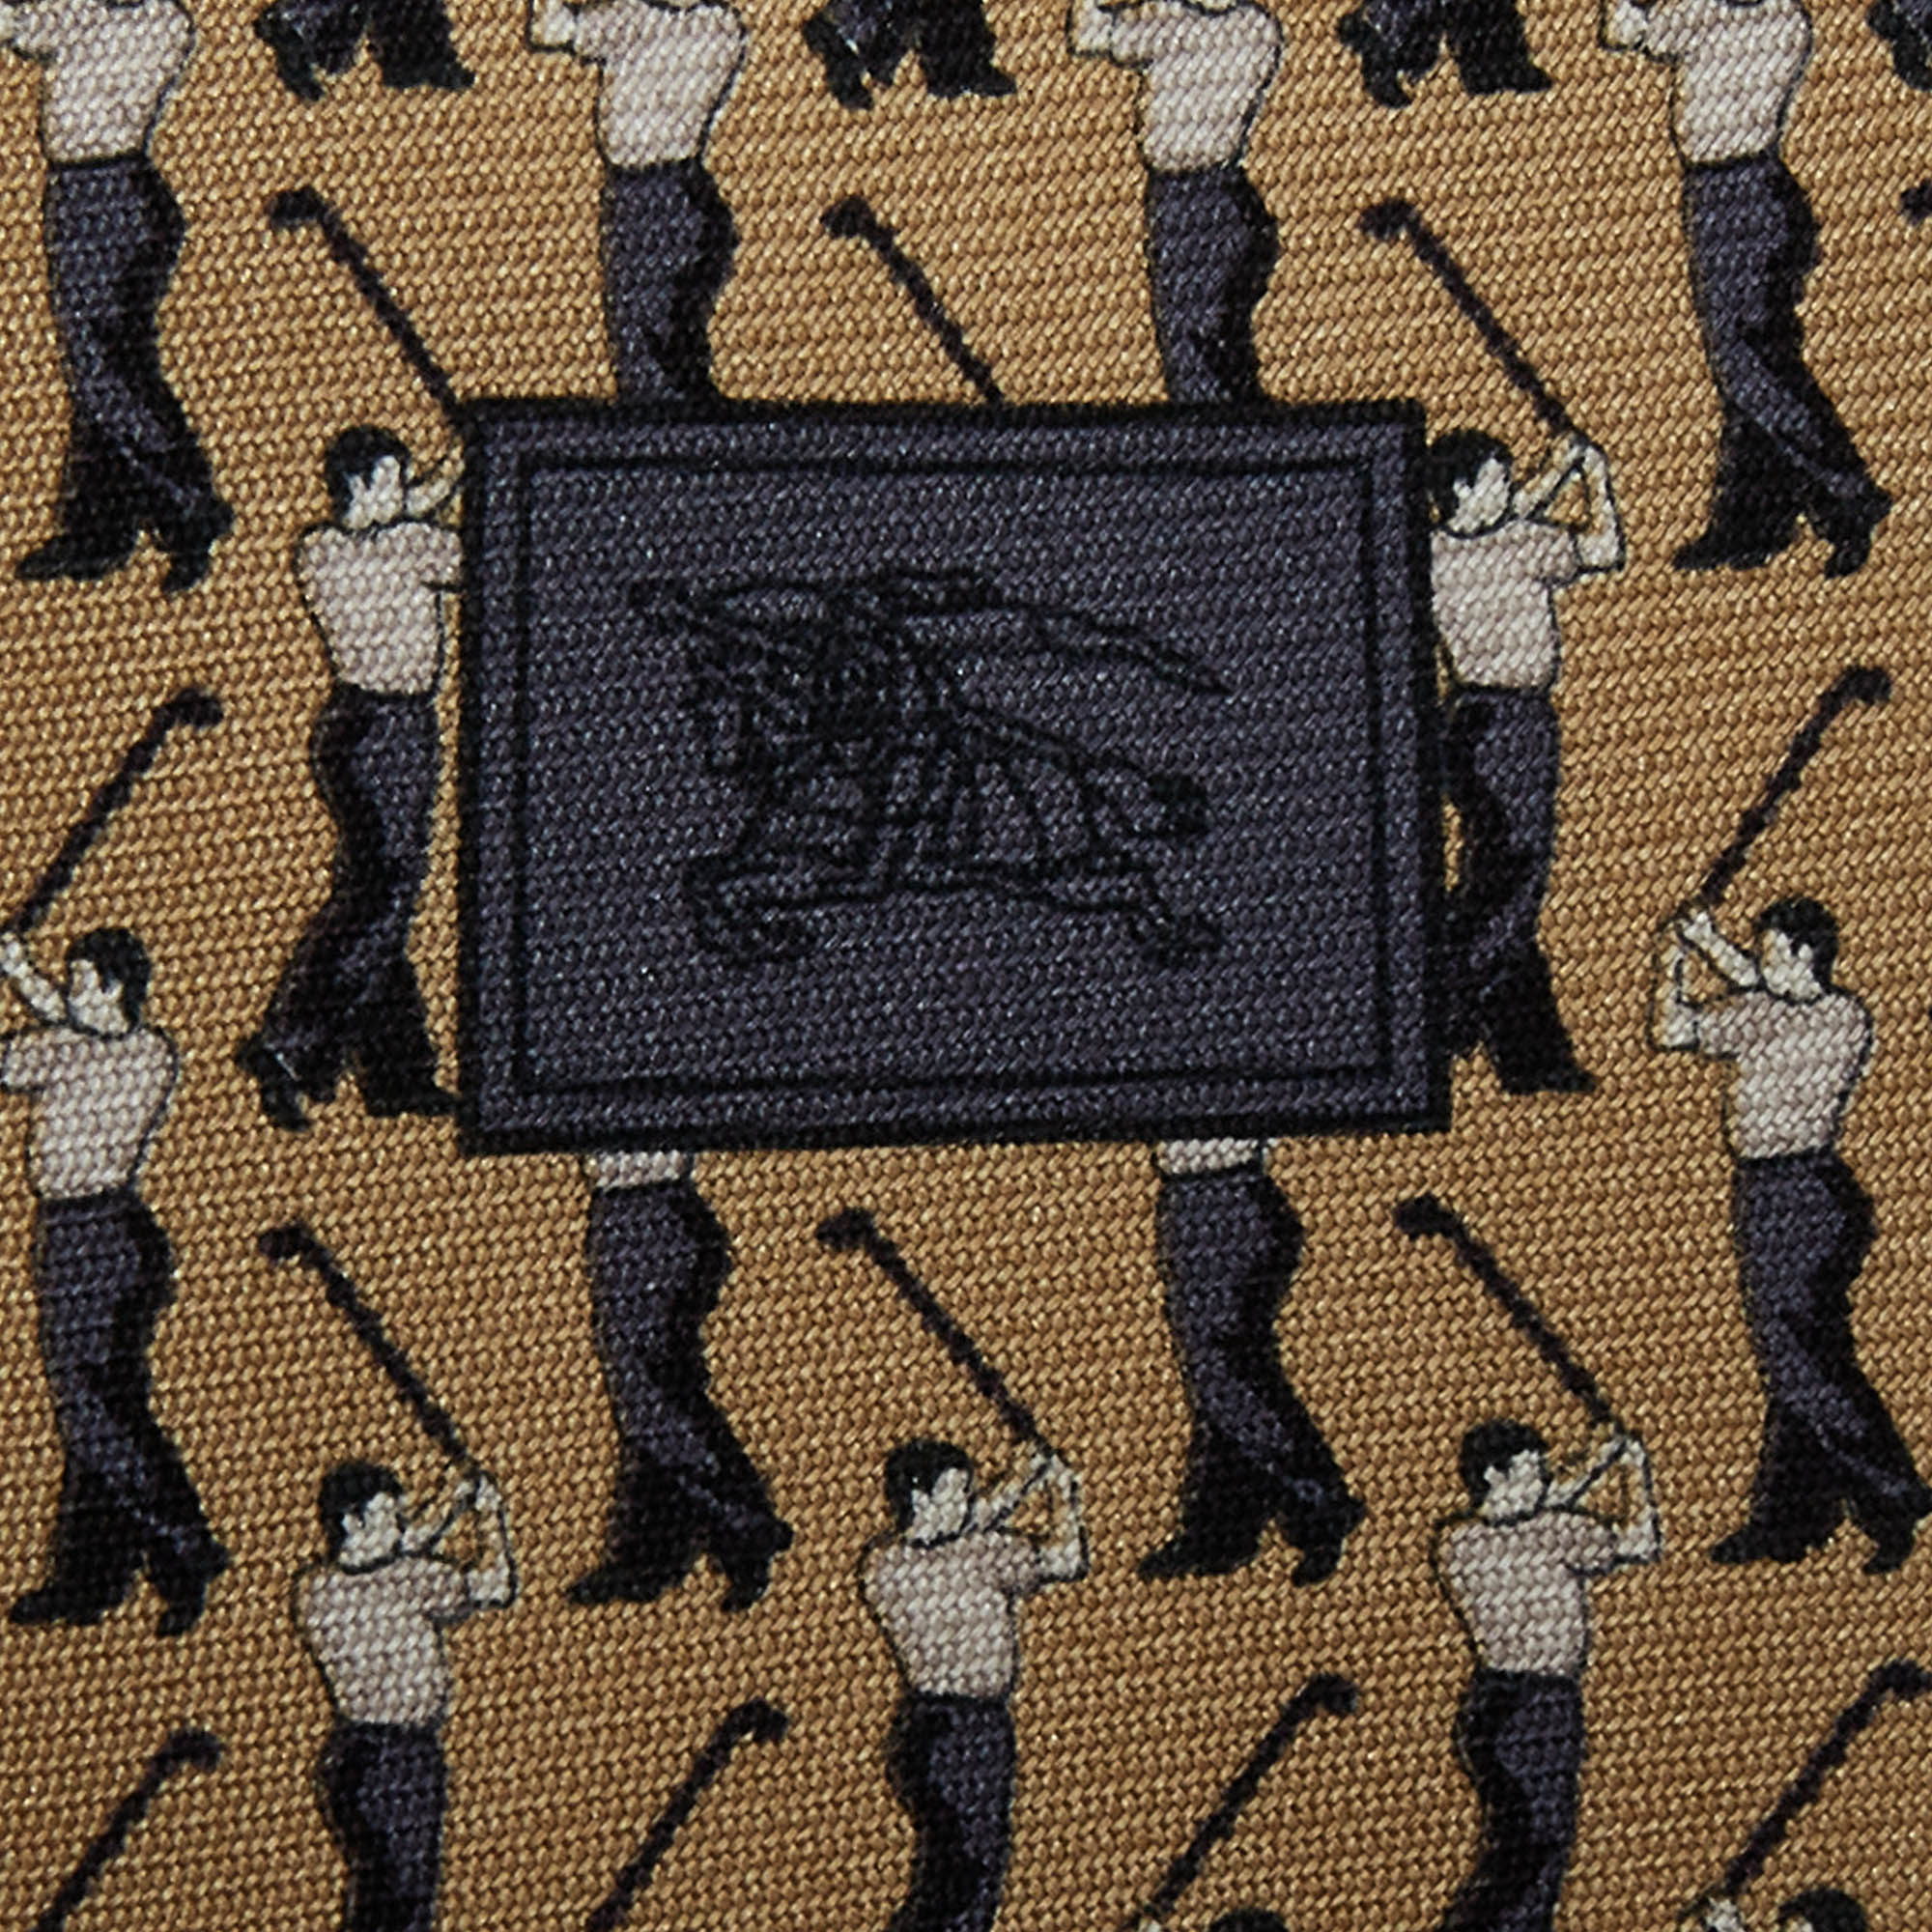 Burberry Beige Printed Silk Tie